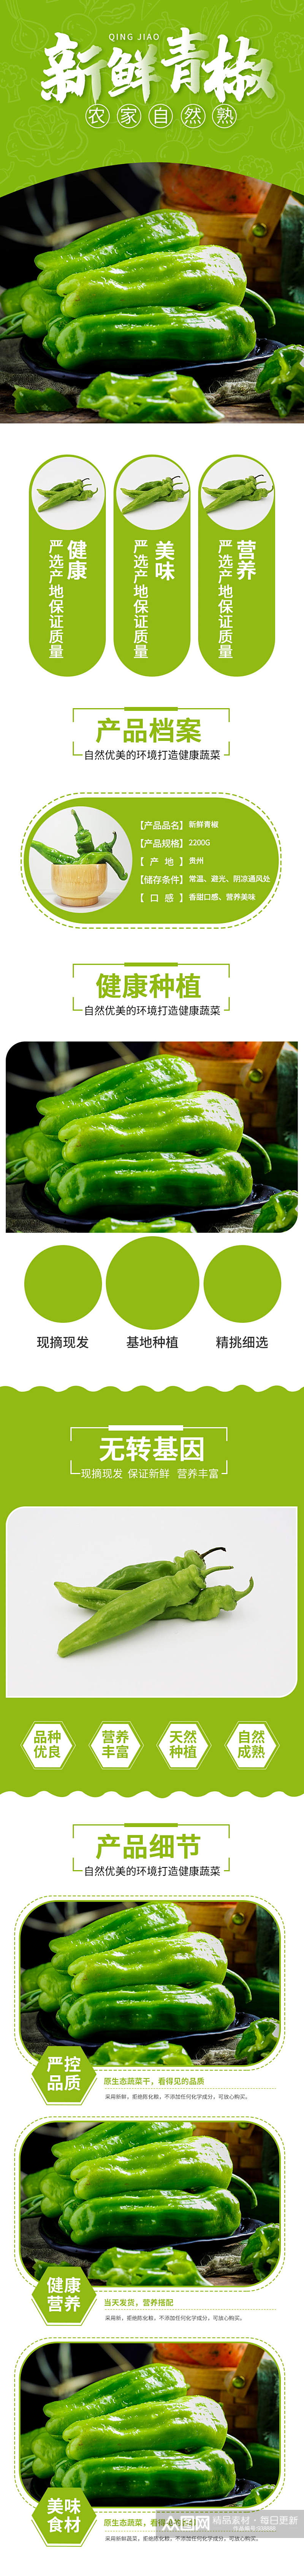 蔬菜水果生鲜详情页简约新鲜青尖椒素材